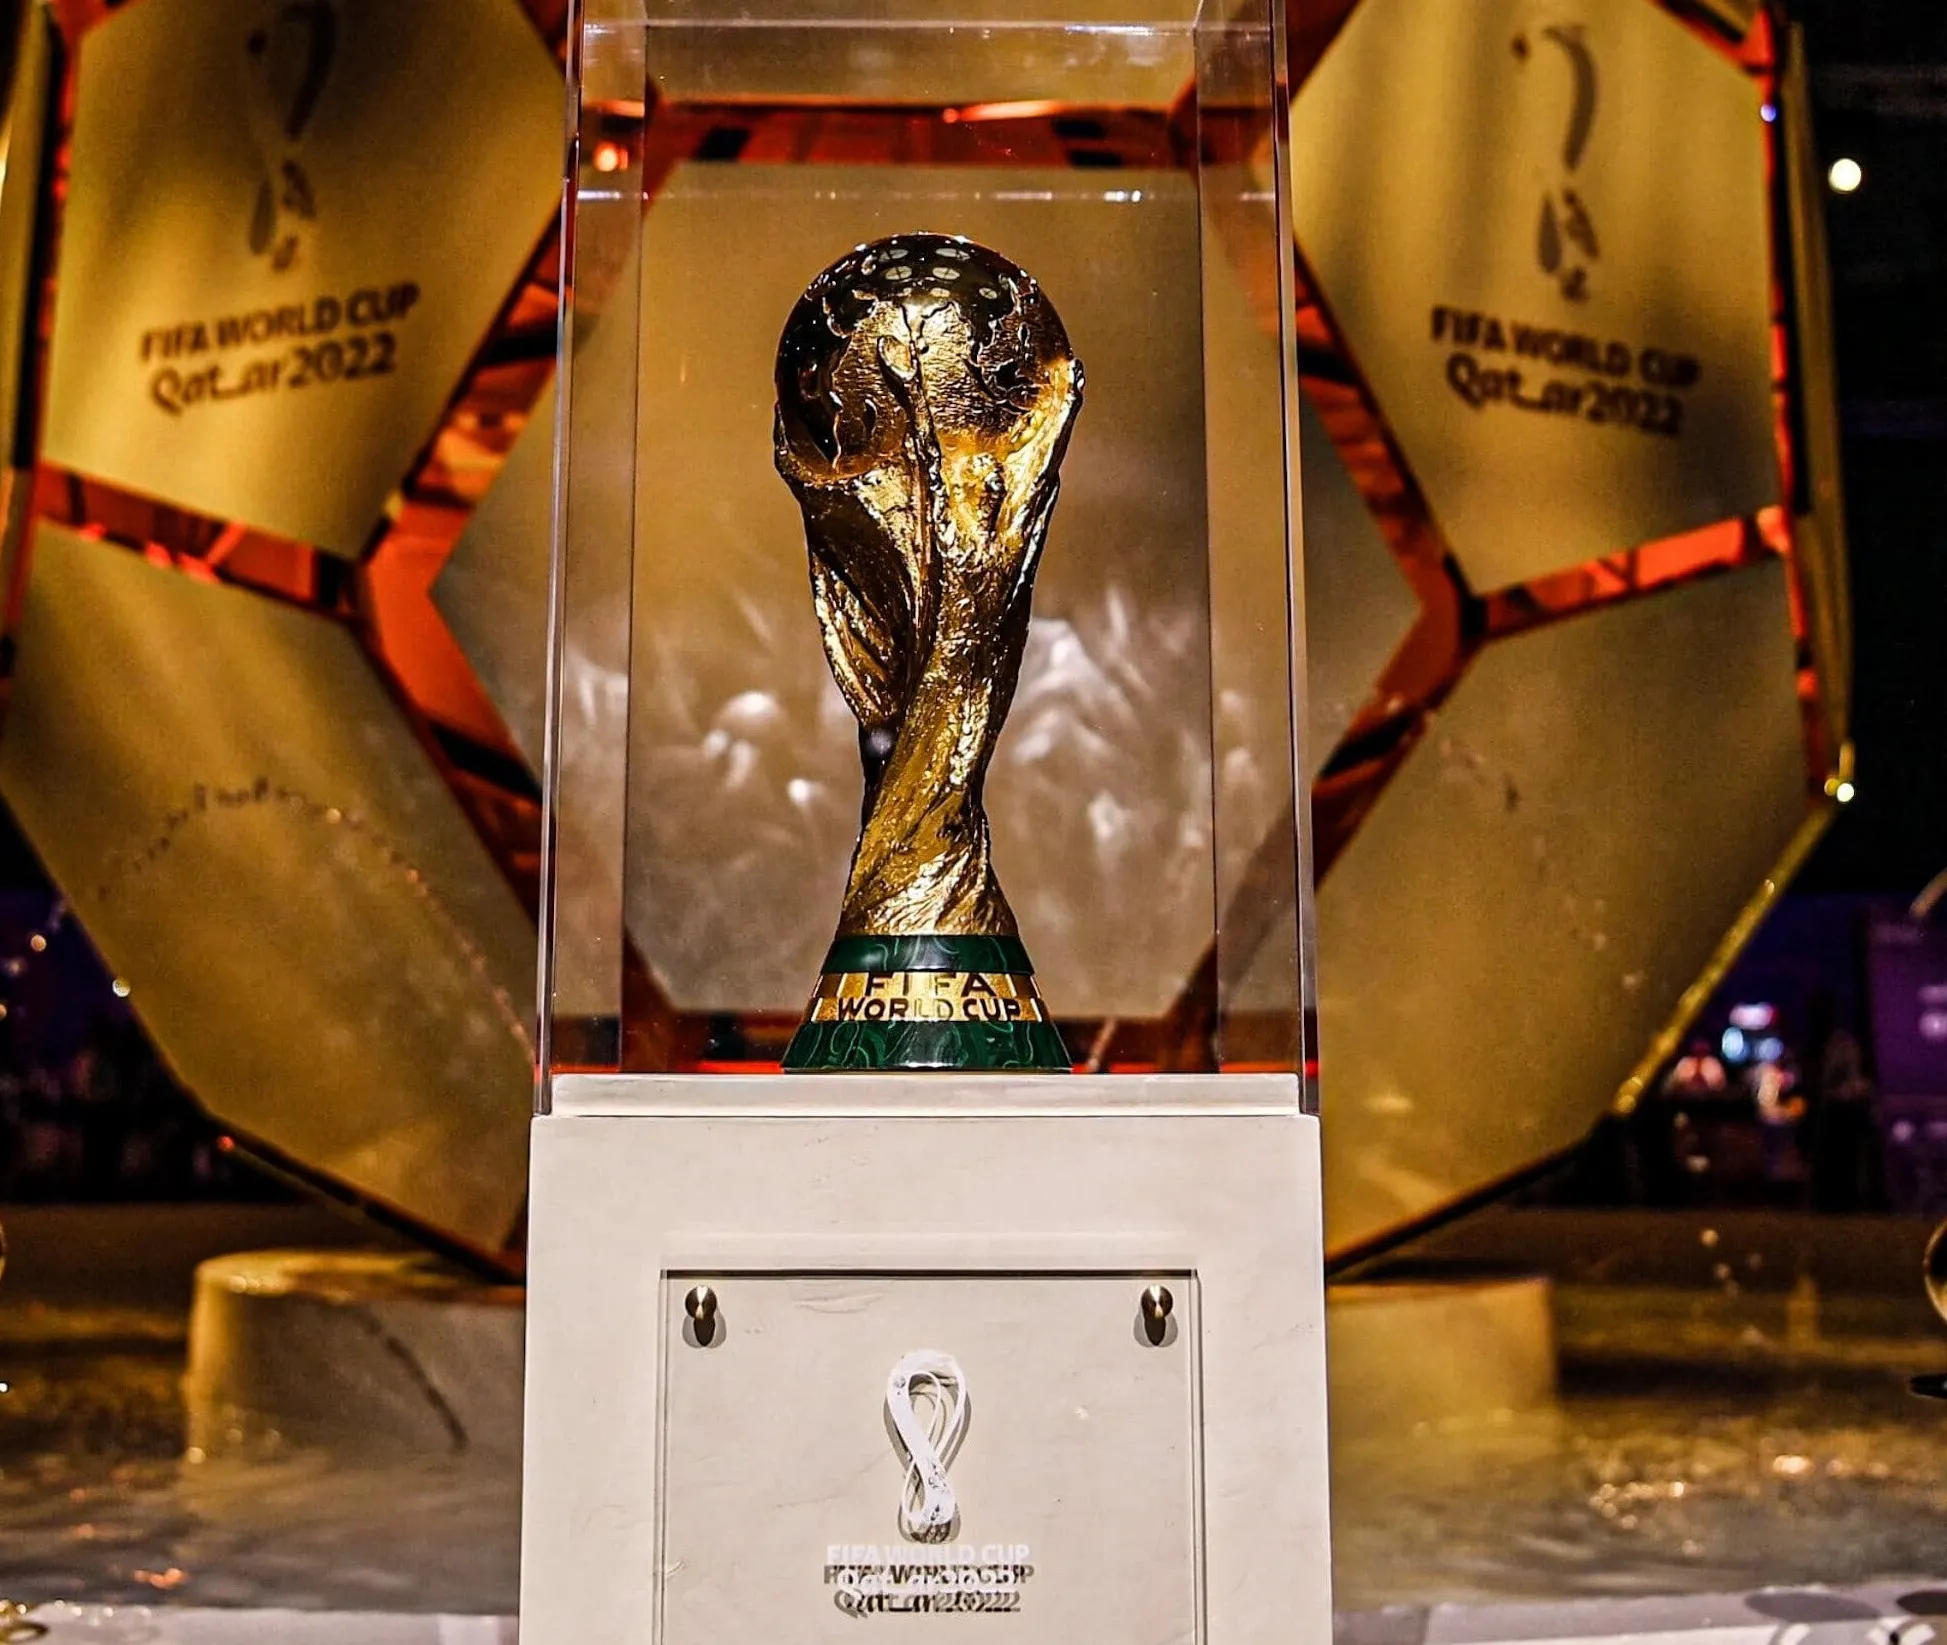 Seleções vão em busca do tão sonhando título da Copa do Mundo